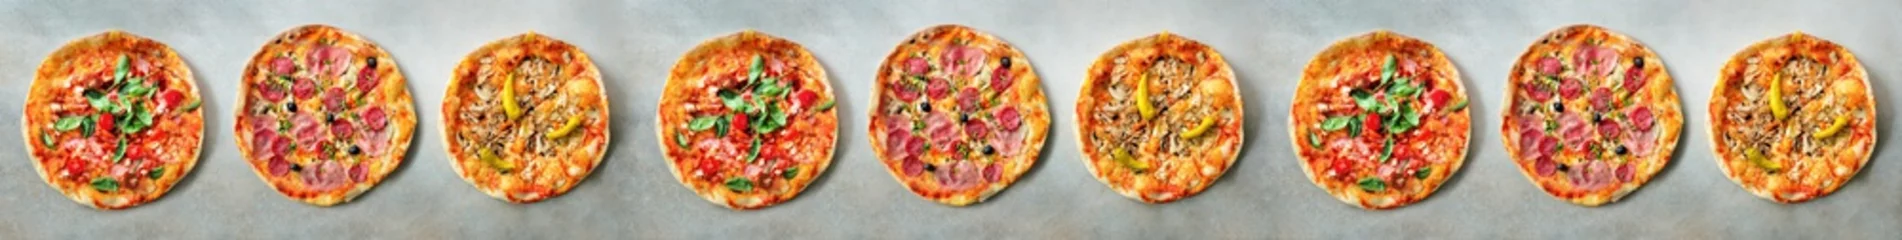 Fototapeten Pizza-Muster. Neun Stücke auf grauem Betonhintergrund. Ansicht von oben, Exemplar © jchizhe